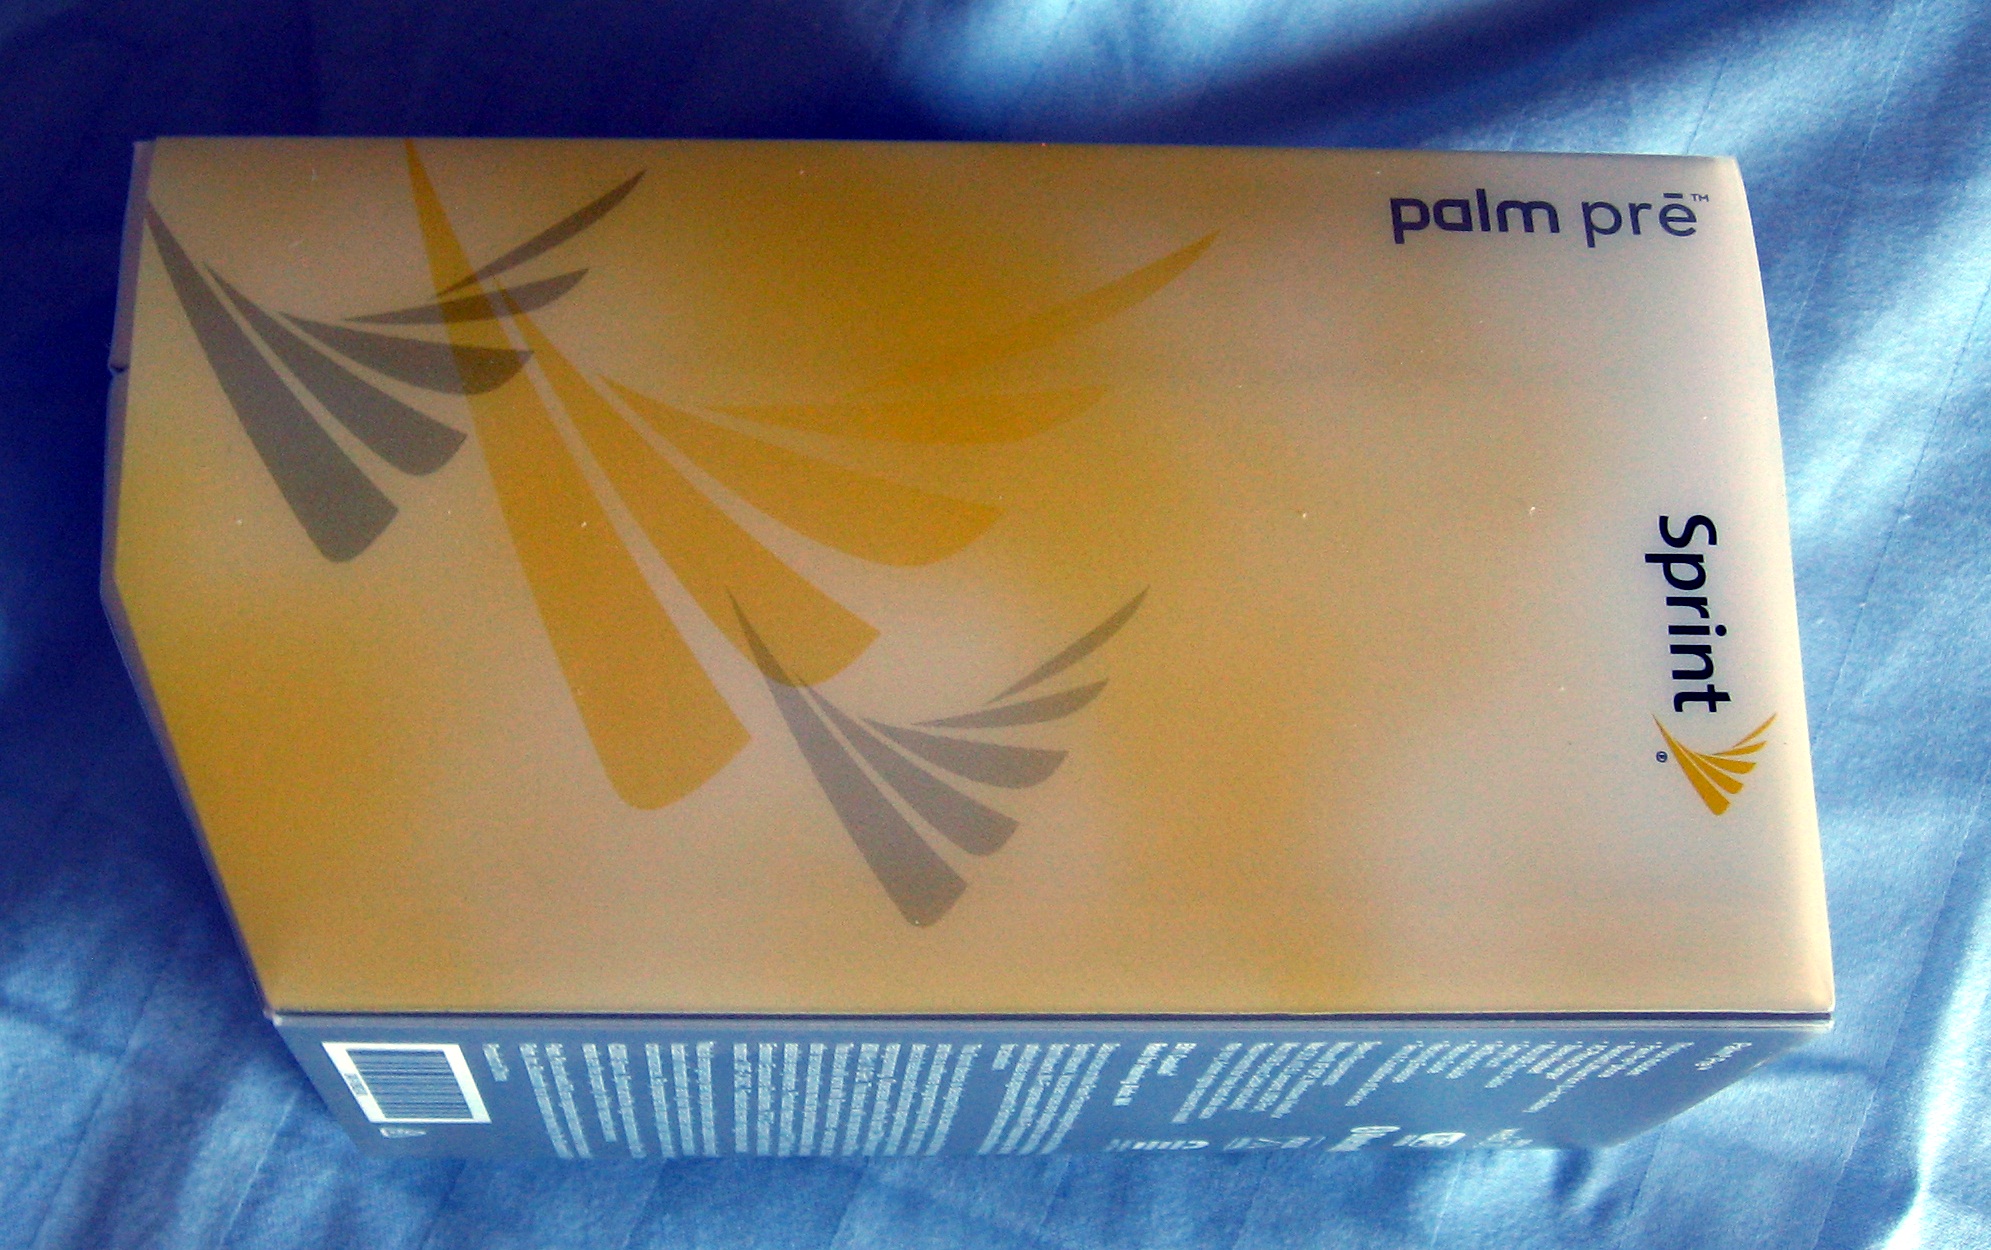 Palm Pre box, side